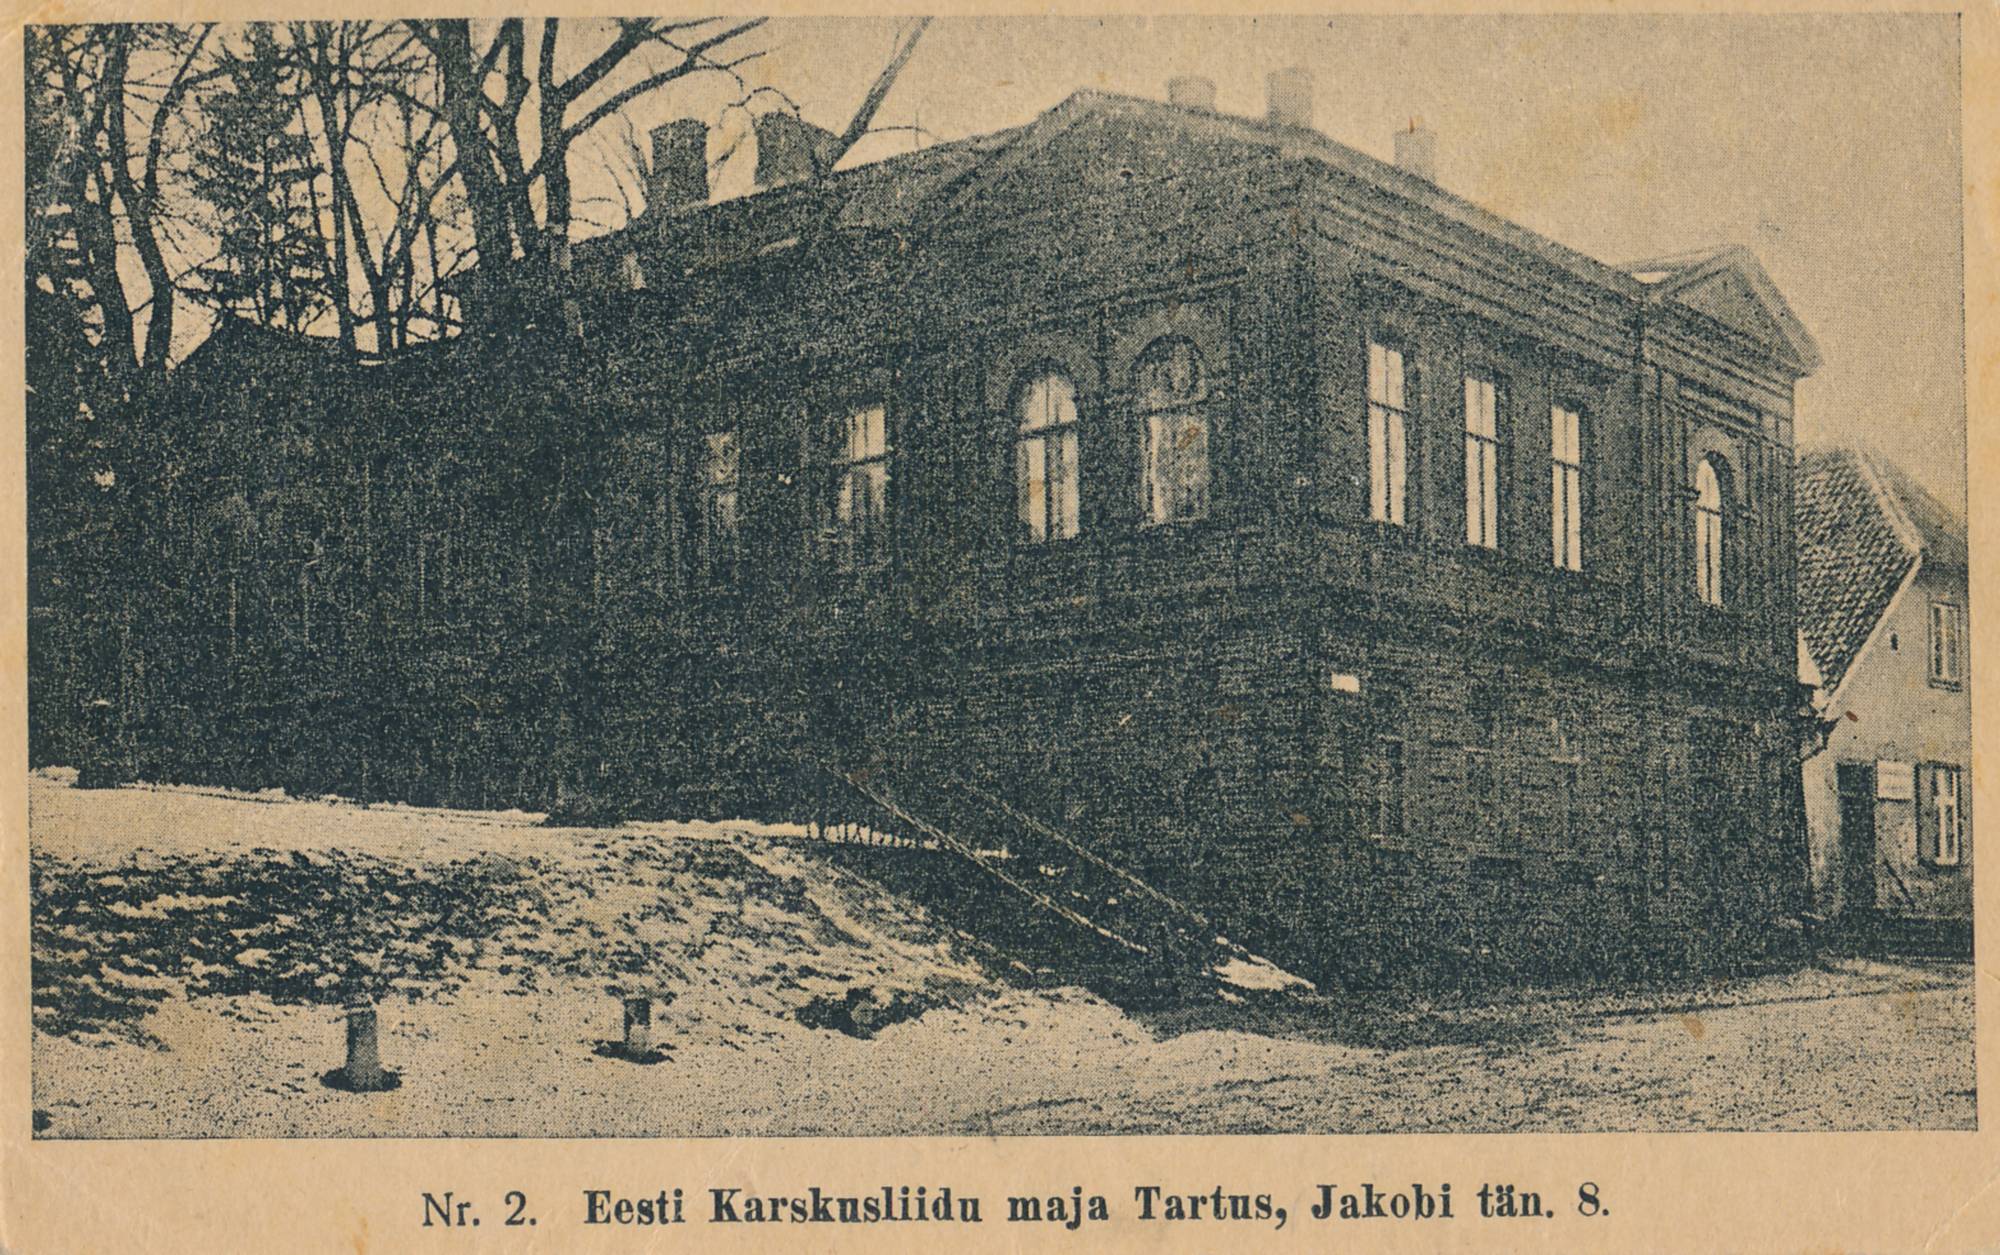 Eesti Karskusliidu maja (Jakobi 8). Tartu, 1920-1930.